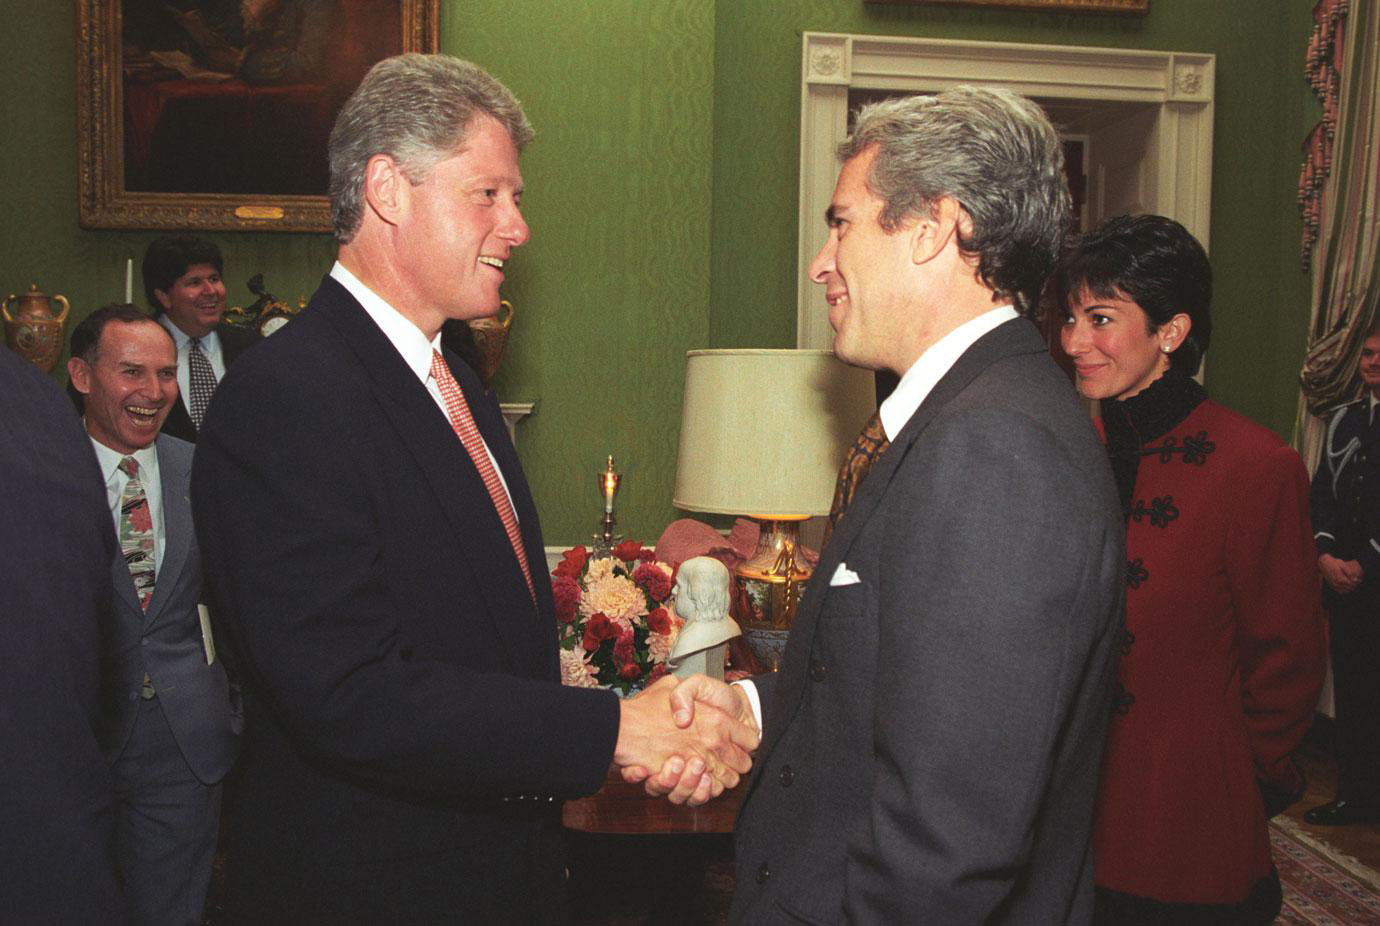 Según la Biblioteca y Museo Presidencial William J. Clinton, el expresidente estadounidense Bill Clinton fue fotografiado con Jeffrey Epstein y Ghislaine Maxwell en la Casa Blanca el 29 de septiembre de 1993.